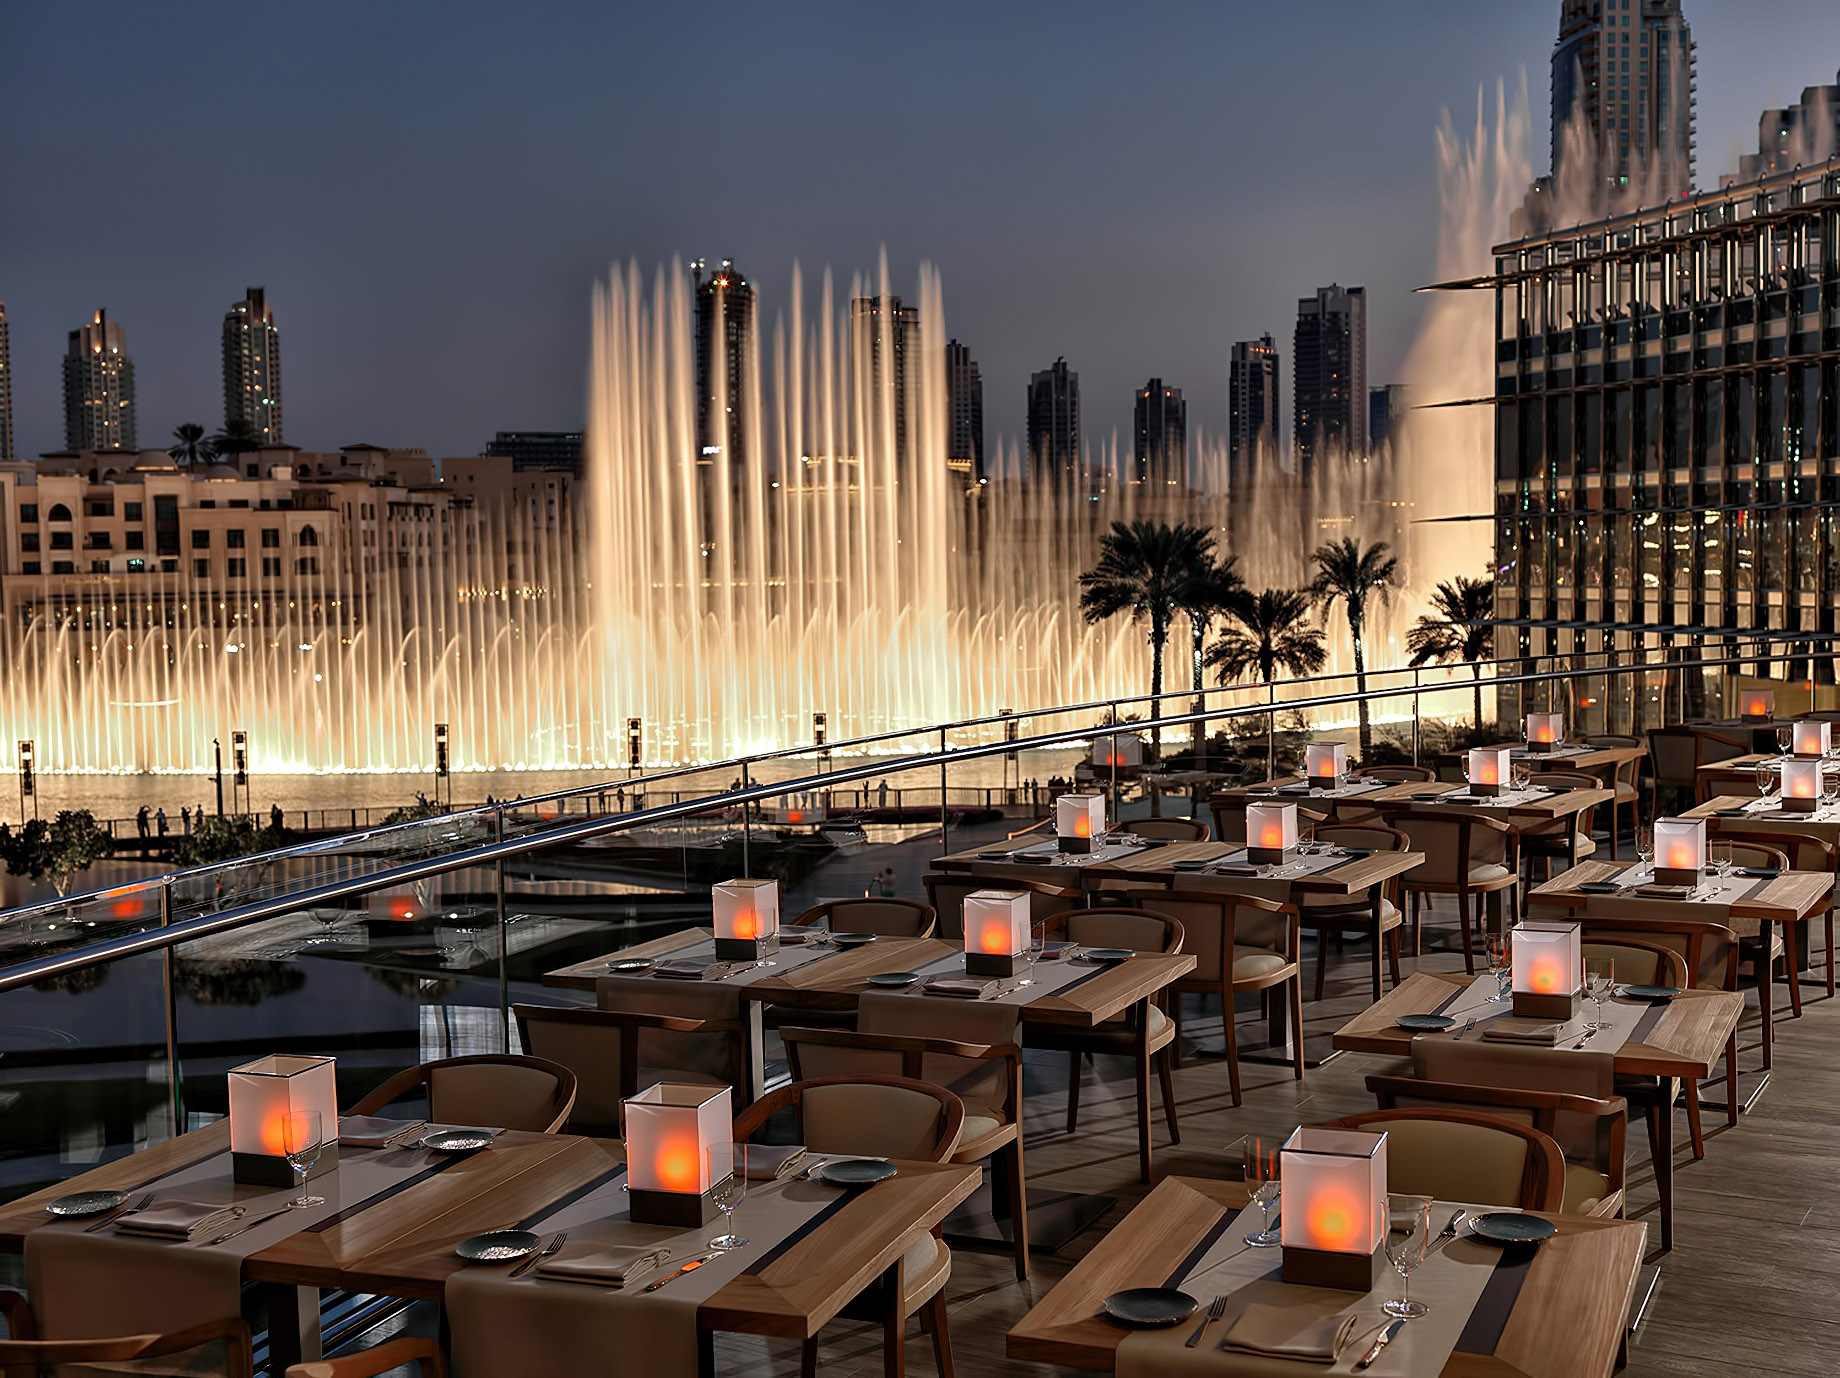 Armani Hotel Dubai - Burj Khalifa, Dubai, UAE - Fountain View Dining Patio